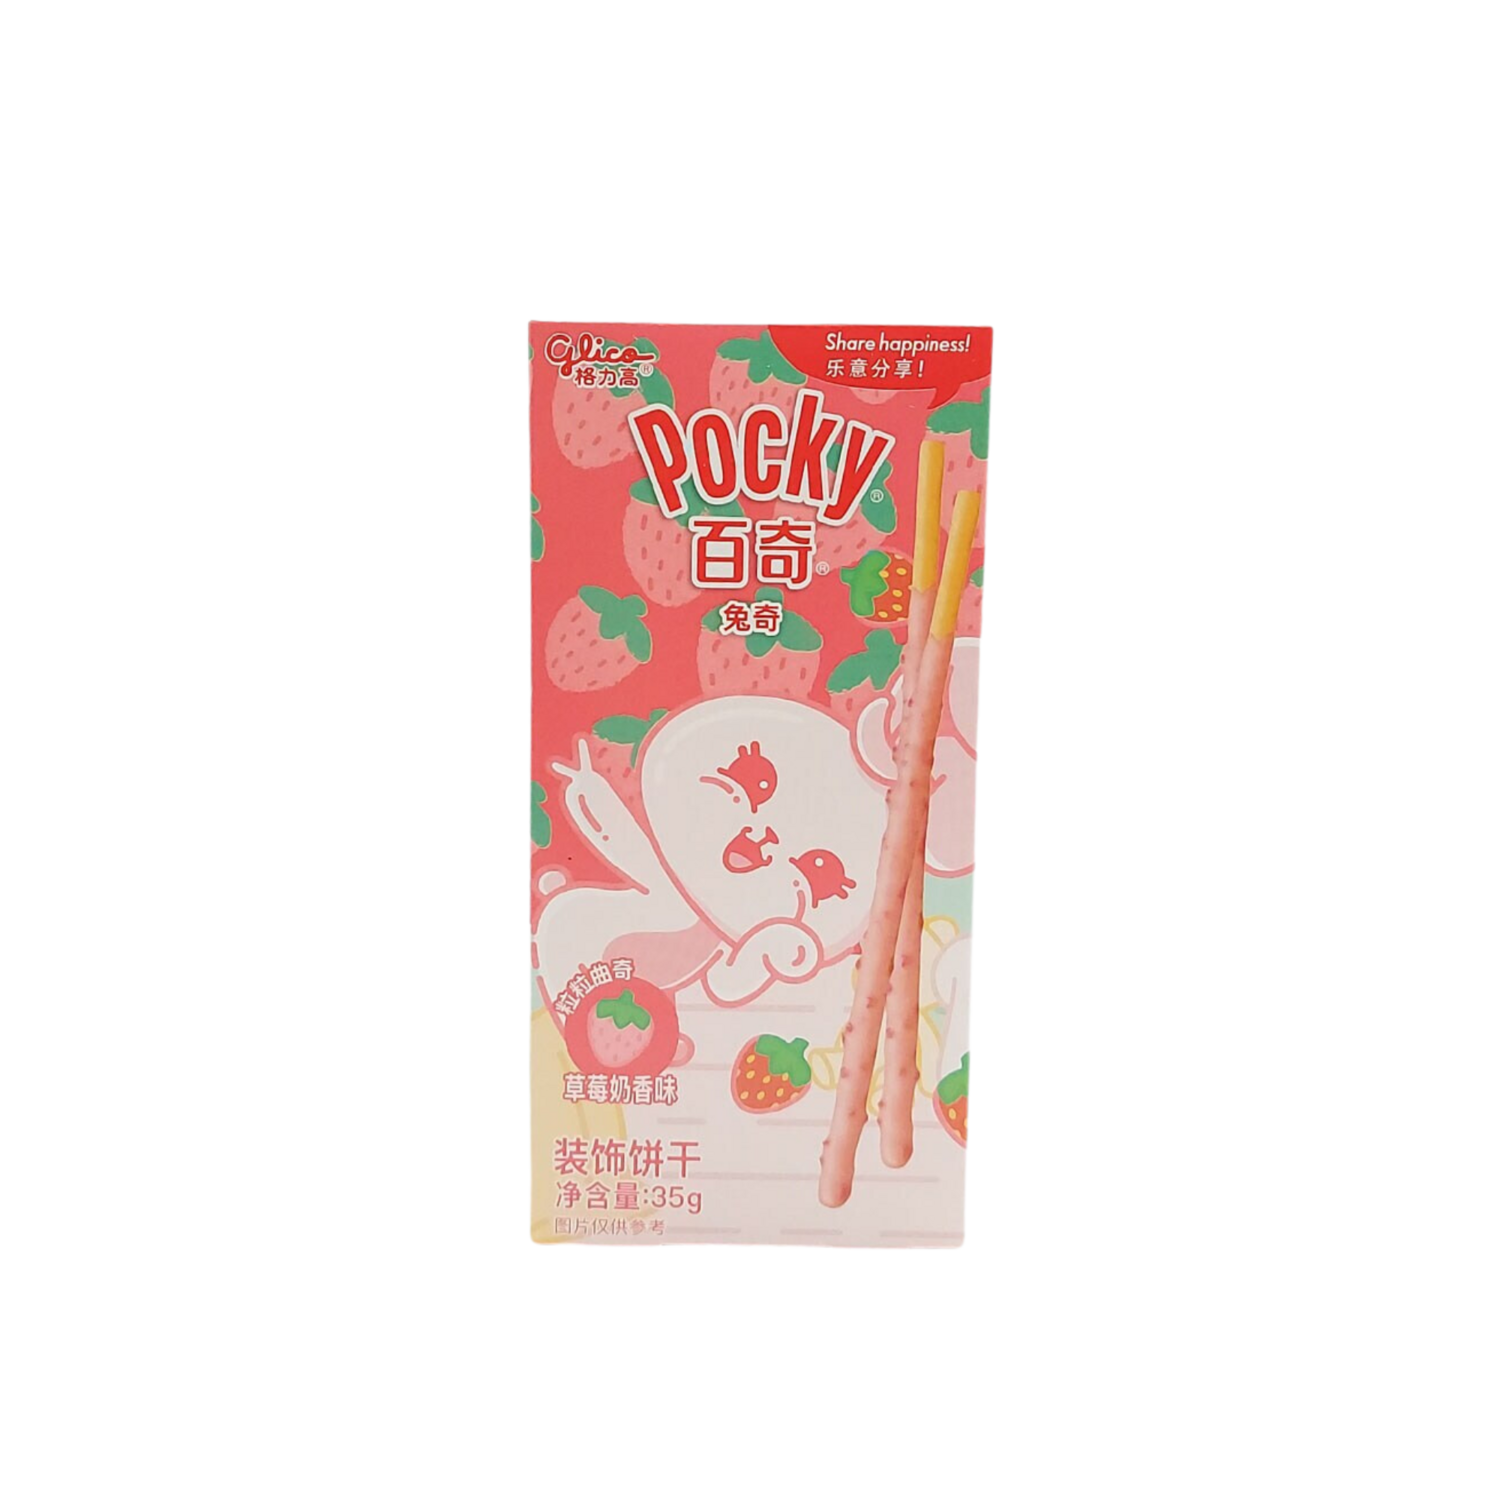 Pocky Strawberry Milk